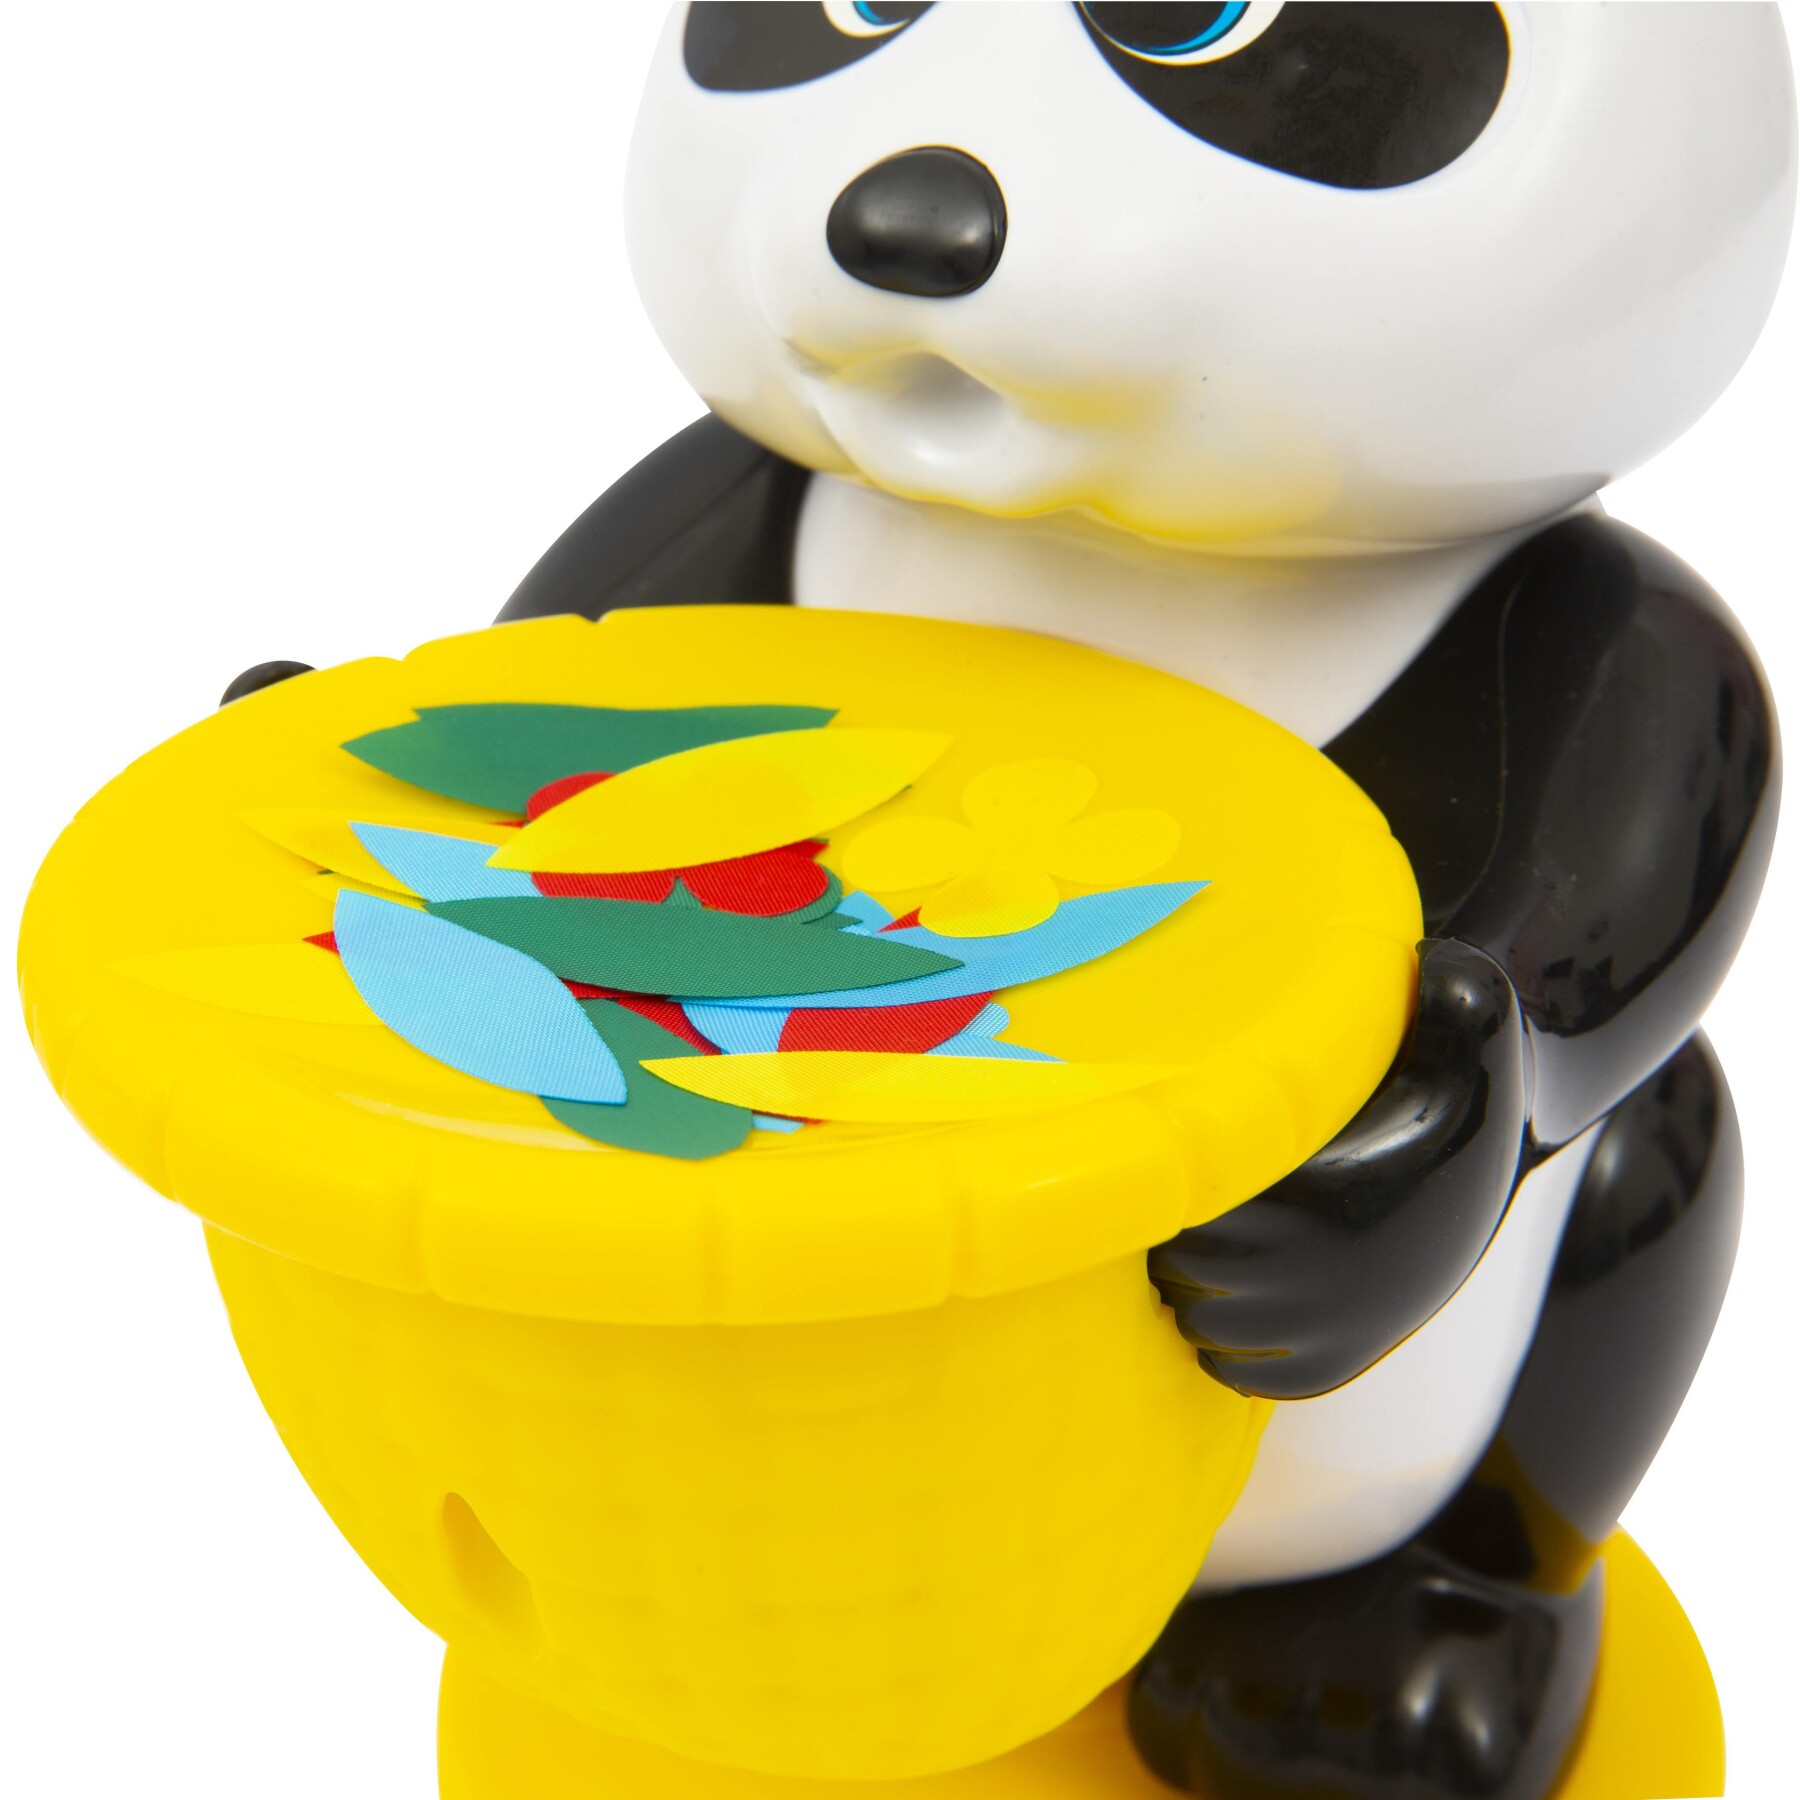 Grandi giochi - panda fun, gioco musicale per bambini dai 3 anni - 